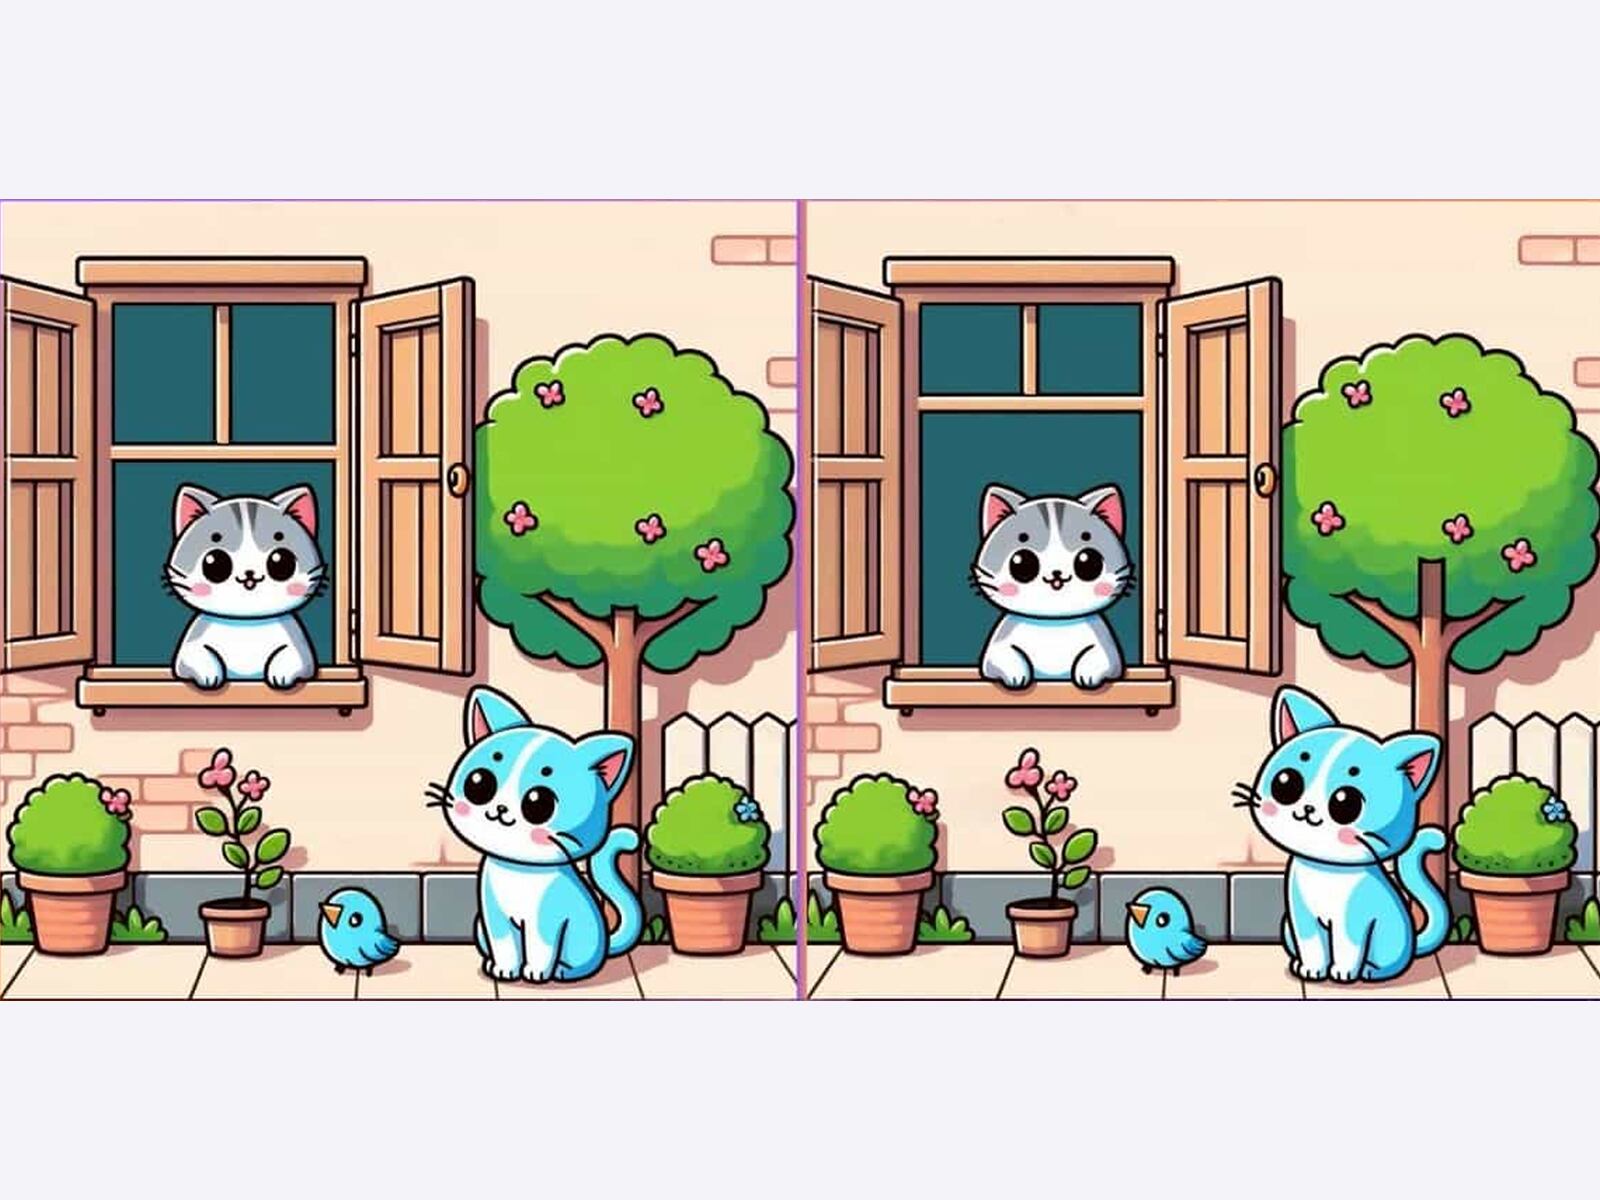 En este juego visual, te presento una tierna imagen de dos gatitos jugando juntos. A primera vista, parecen idénticos, pero hay 3 sutiles diferencias que deberás encontrar para superar el reto.